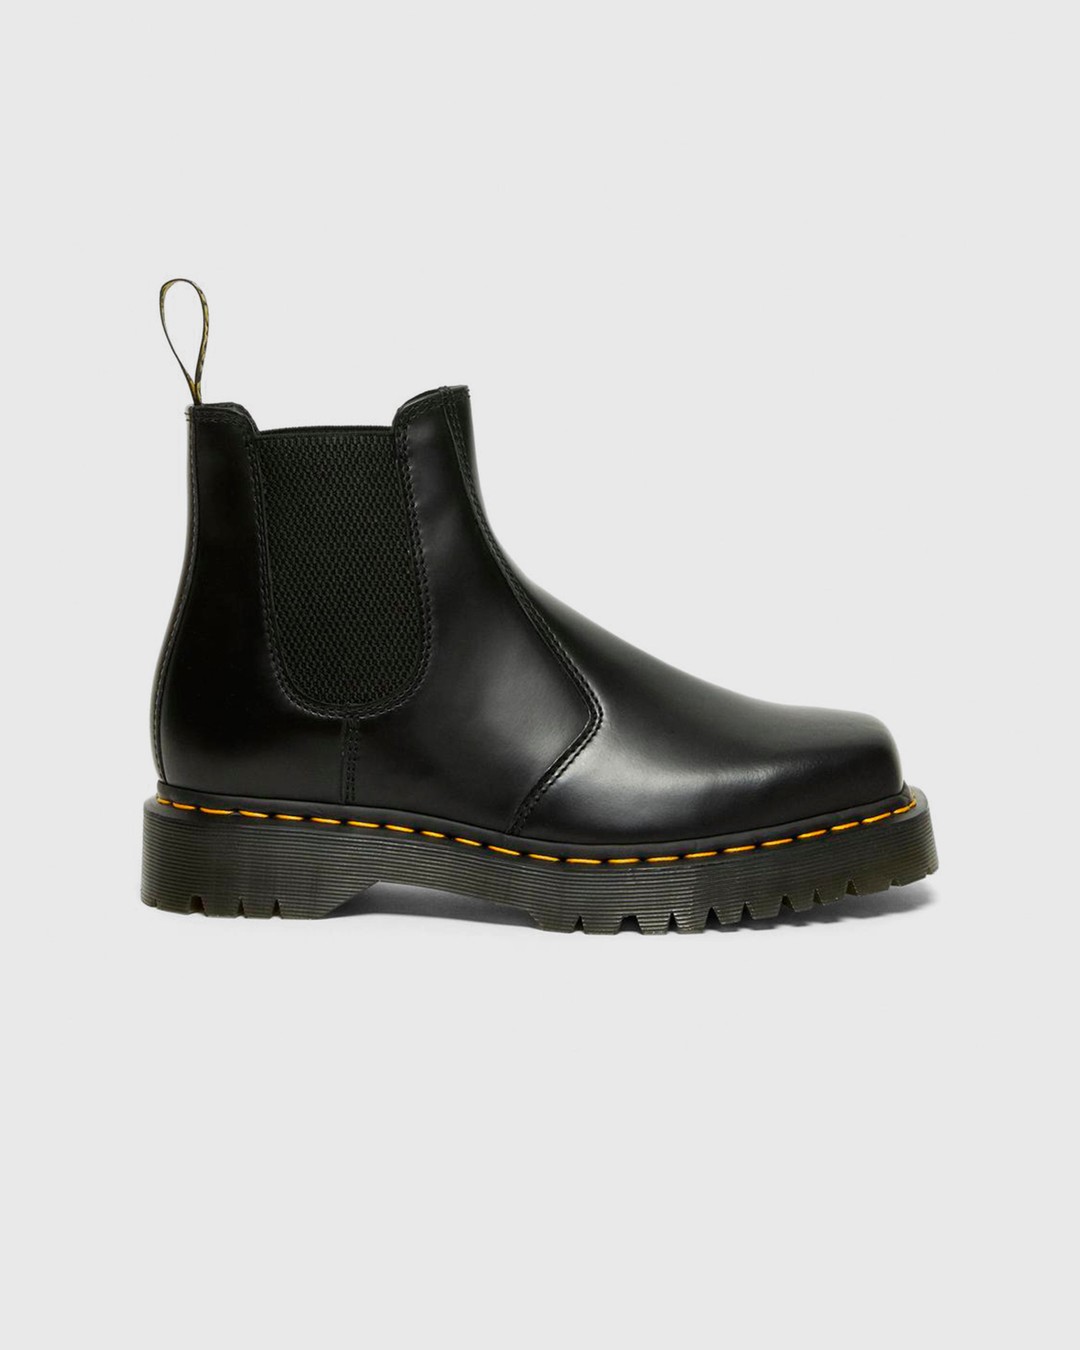 Dr. Martens – 2976 Bex Squared Black Polished Smooth - Shoes - Black - Image 1